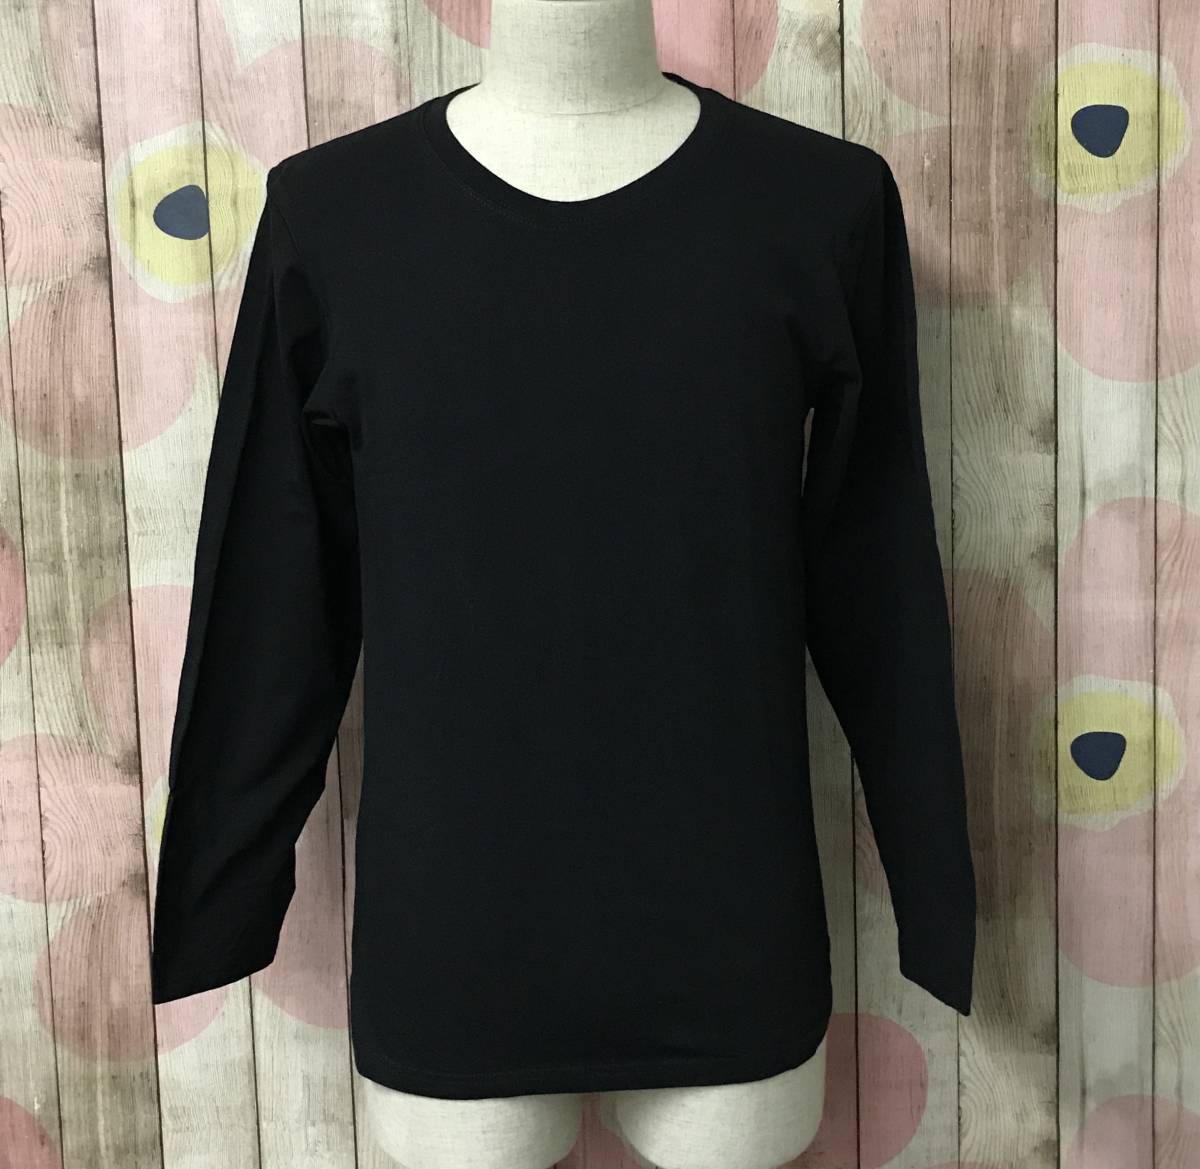 #54_0242 インナーシャツ Tシャツ 長袖 4枚組 綿100% 丸首 メンズ XL(日本サイズM相当) ブラック_画像1